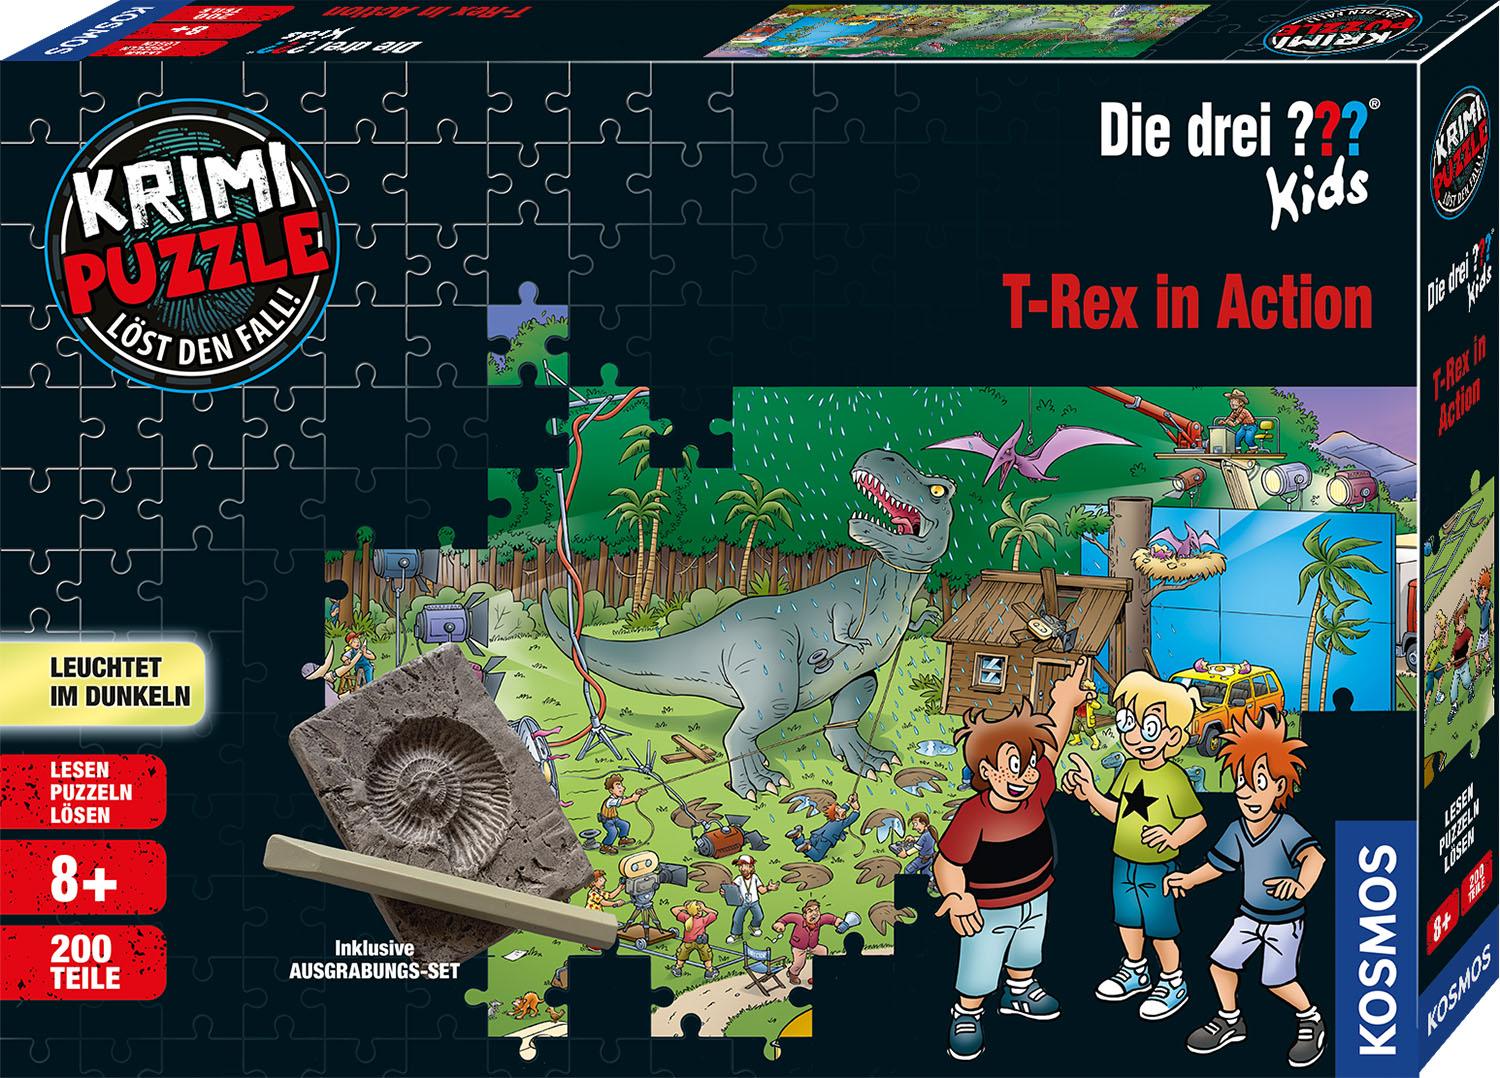 Krimi Puzzle: Die drei ''' - T-Rex in Action